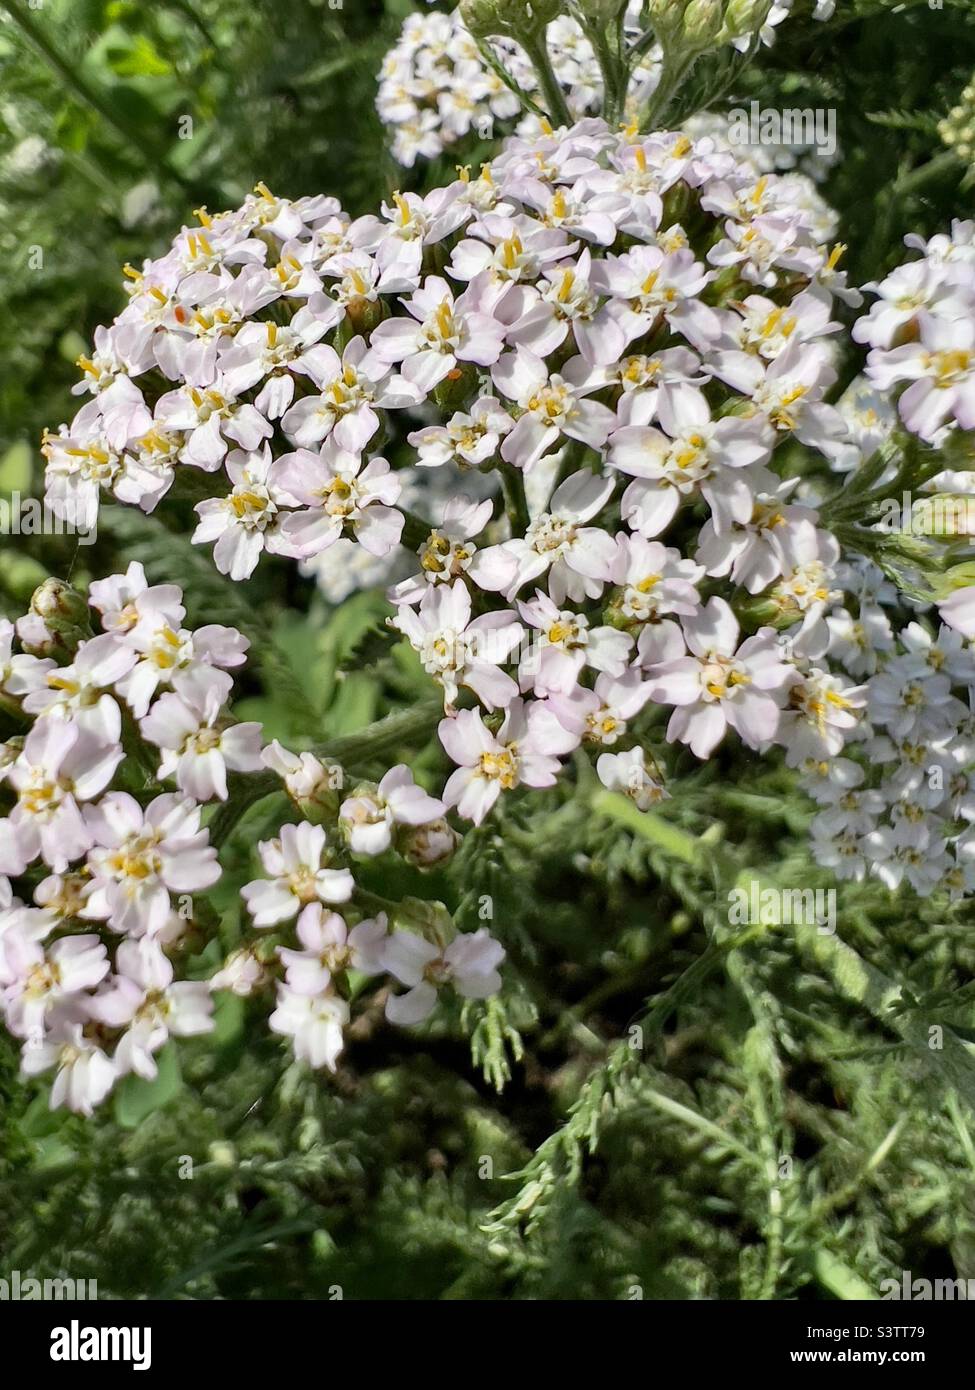 petites fleurs blanches dans l'herbe. fond vert naturel. la végétation d'été est charmante et agréable à l'œil. les rayons san illuminent les plantes à fleurs Banque D'Images